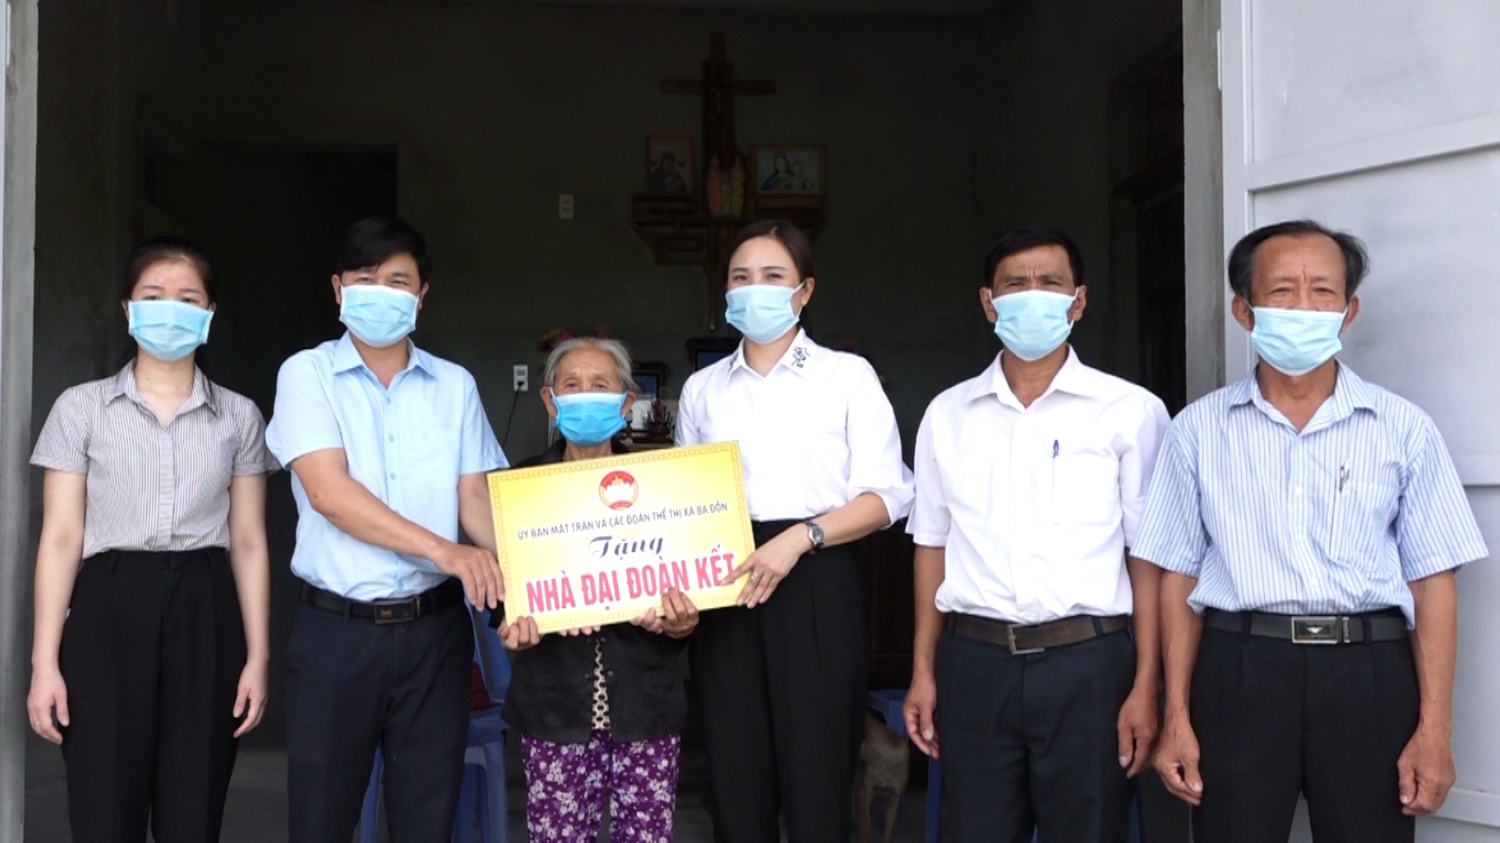 Trao hỗ trợ xây dựng nhà đại đoàn kết cho các hộ nghèo tại xã Quảng Lộc.